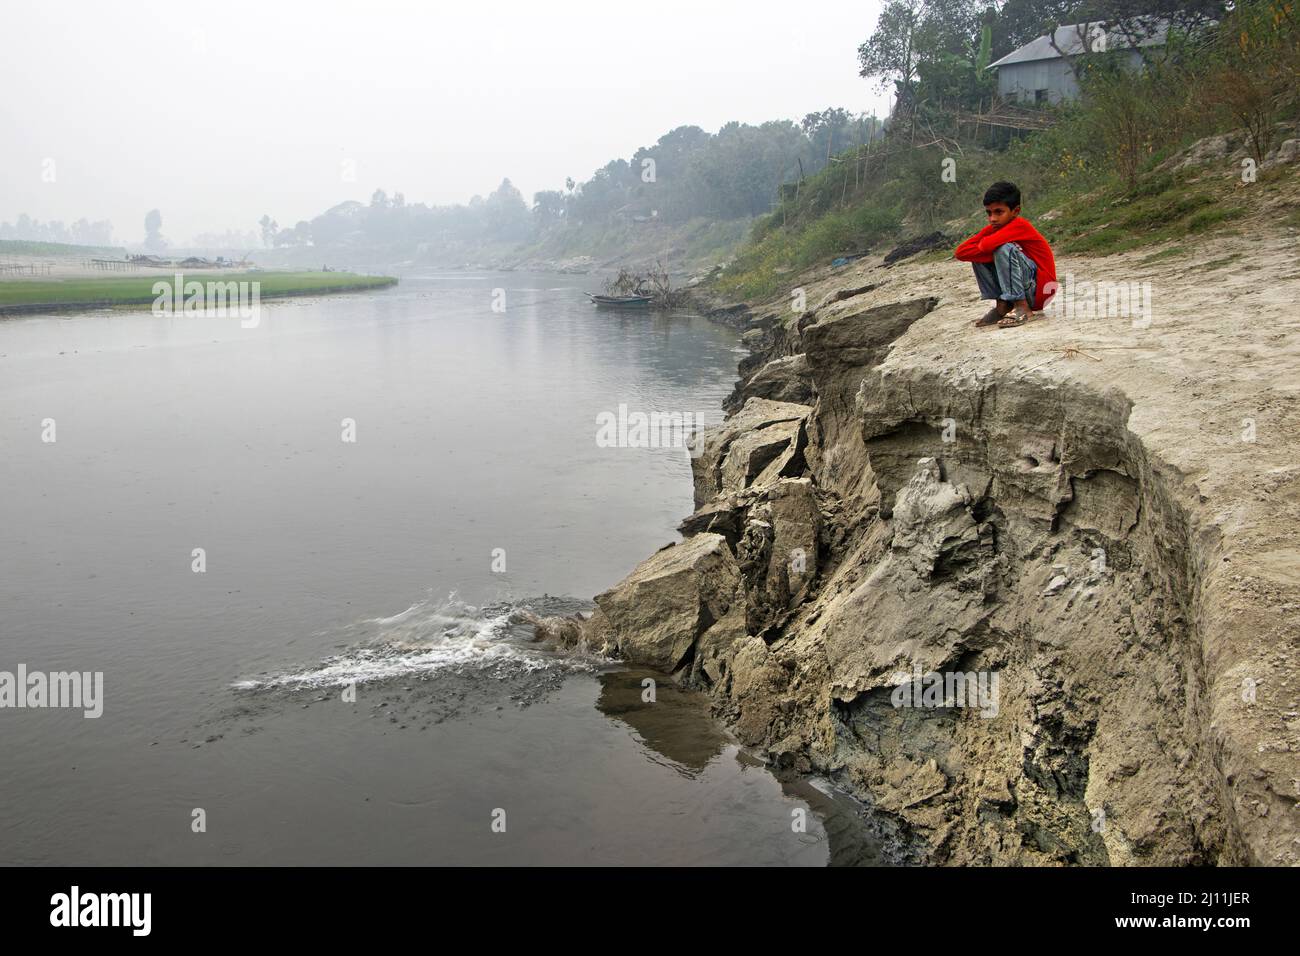 Kamrul, 11, saß am Brahmaputra River in Manikganj, Bangladesh, neben einem erodierenden Flussufer, mit Tränen beäugtem Blick, als die Erosion weiter stattfindet und seine Familie dem Risiko einer Vertreibung aussetzt. Kamruls Familie lebt neben dem Brahmaputra Fluss, muss sich aber nach unbekannten Zielen aufmachen, nachdem die Erosion durch den Fluss den größten Teil ihres Landes und ihrer Heimat weggenommen hat. Bangladesch mit seiner dichten Bevölkerung und seiner Fülle an Flüssen hat mehr als seinen Anteil an tropischen Stürmen, Überschwemmungen und anderen Naturkatastrophen überstanden. Der Klimawandel hat diese zerstörerischen Elemente nur beschleunigt. Aber es steht auch einem anderen gegenüber, mehr Stockfoto